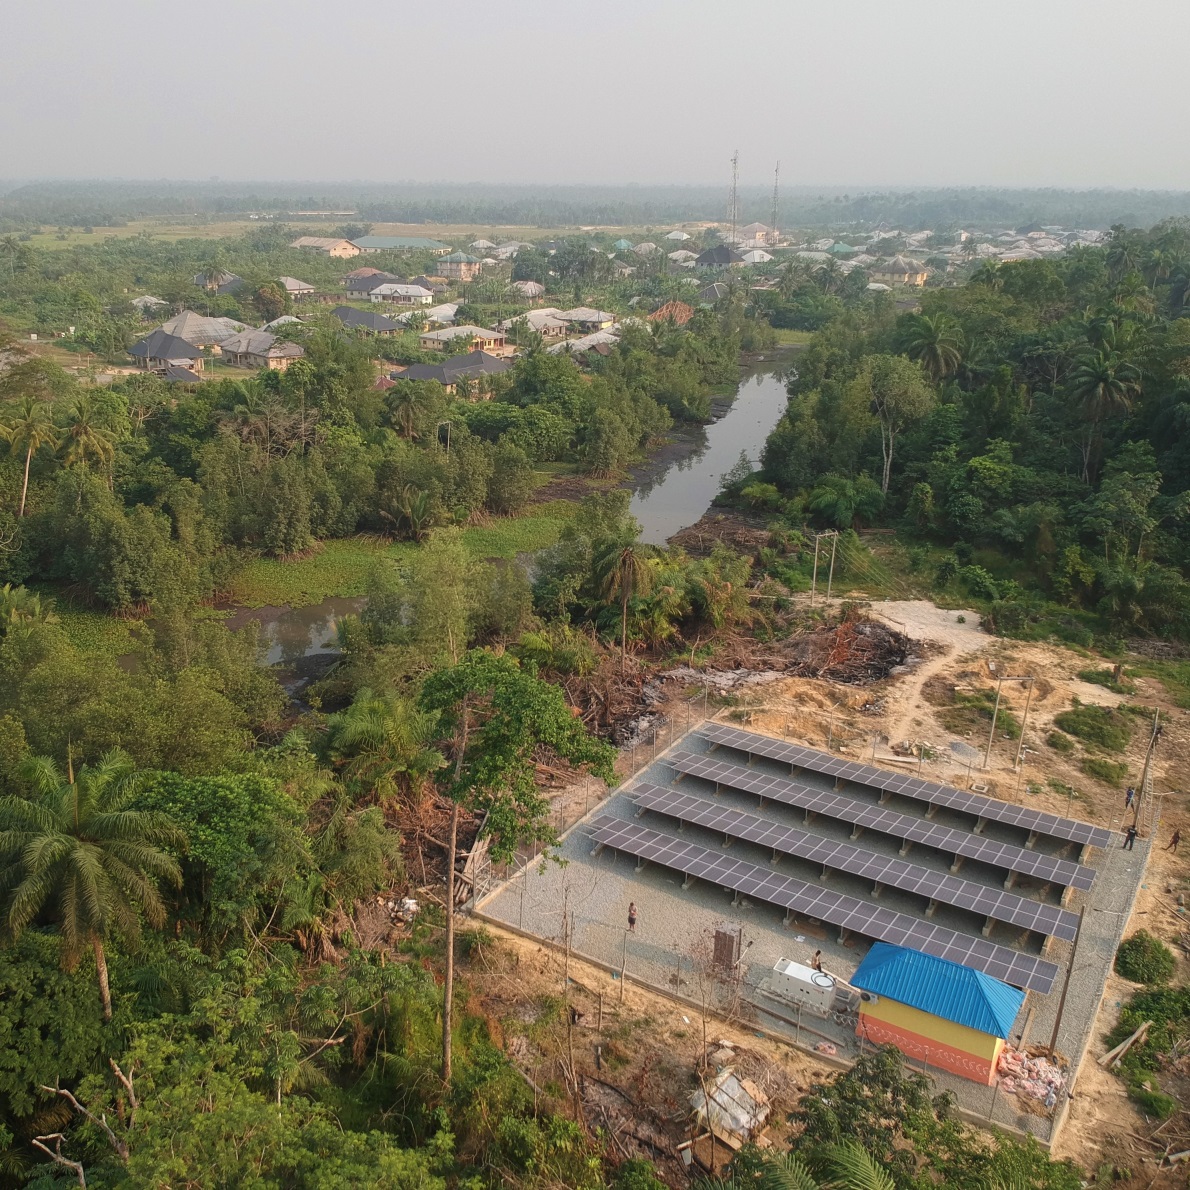 Drone photo of a small community mini-grid